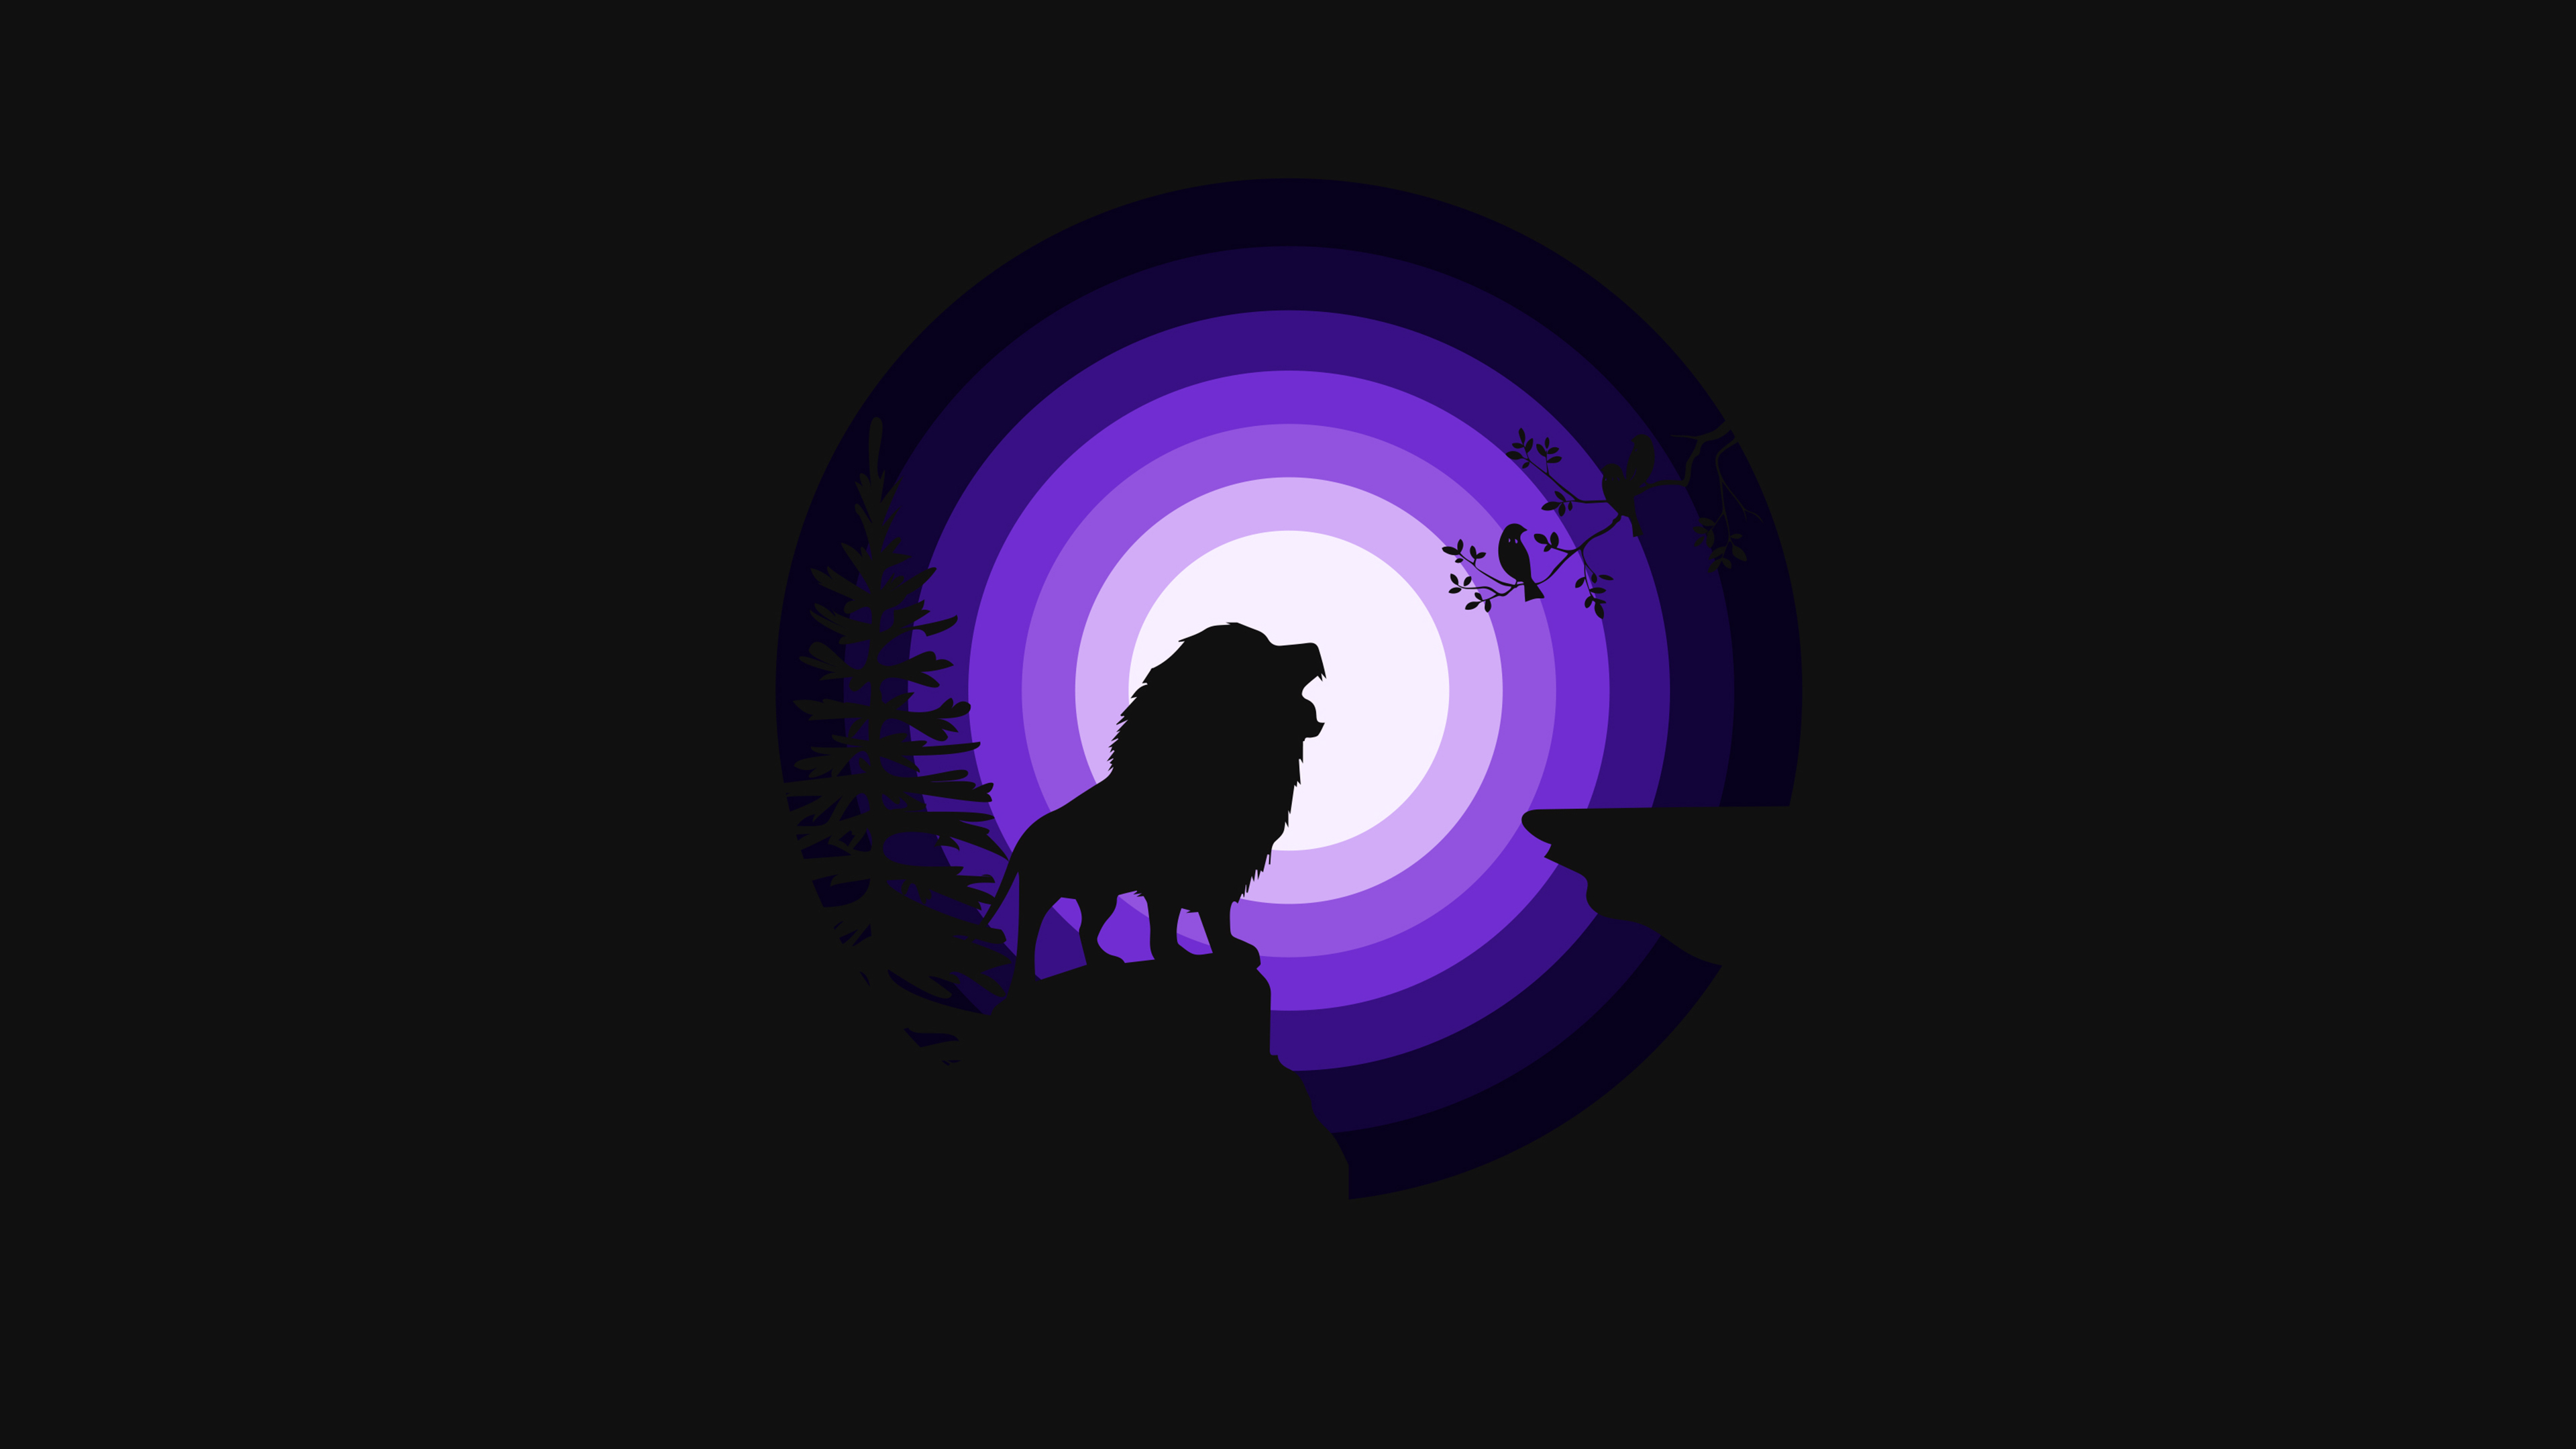 Lion, Roaring, Silhouette, Moon, Night, Purple, 4k Free deskk wallpaper, Ultra HD